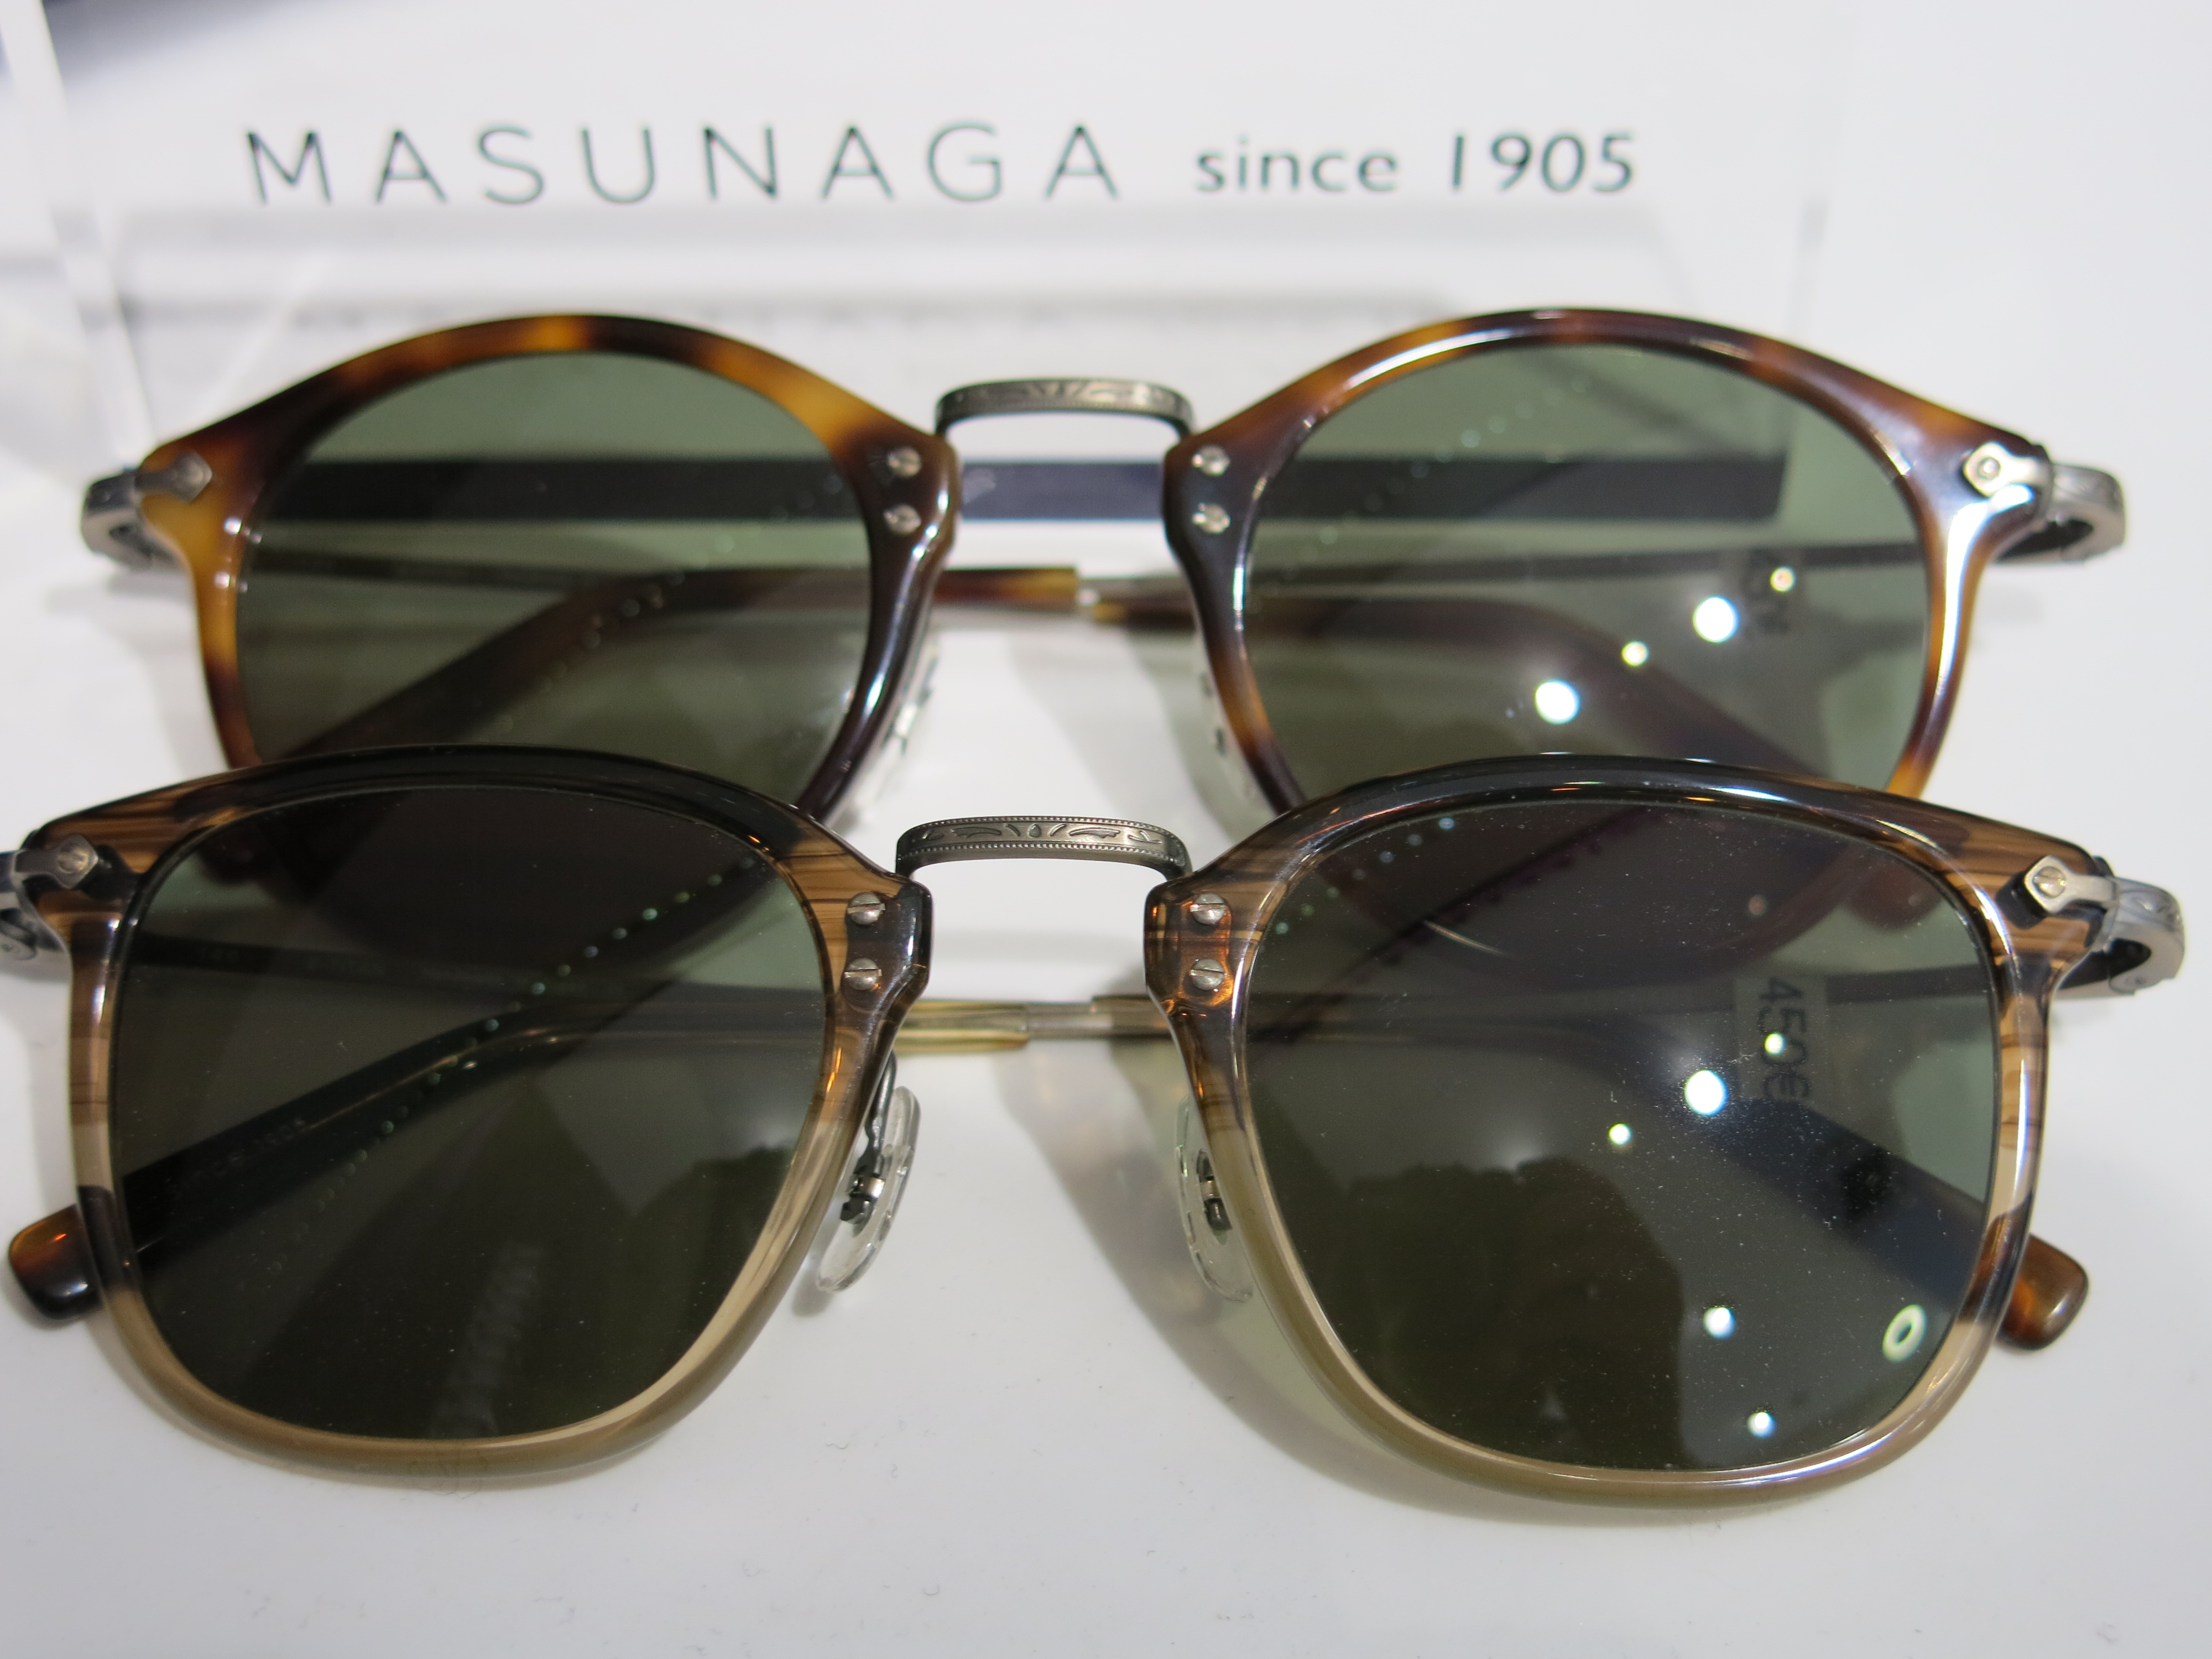 Masunaga1905